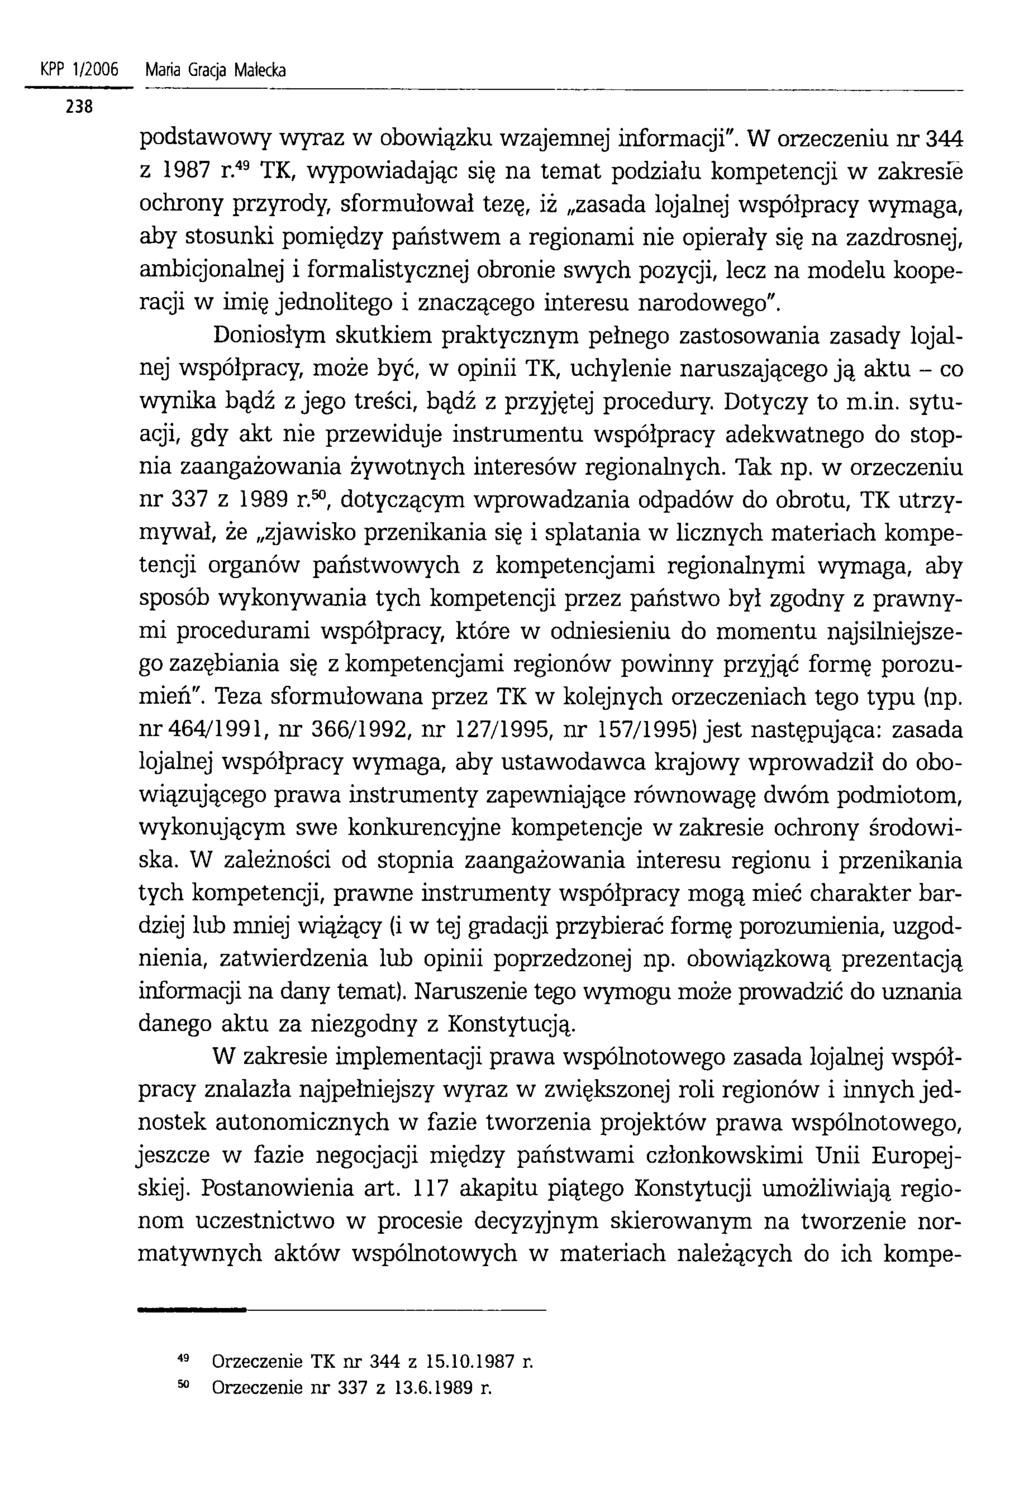 KPP 1/2006 Maria Gracja Małecka podstawowy wyraz w obowiązku wzajemnej informacji". W orzeczeniu nr 344 z 1987 r.